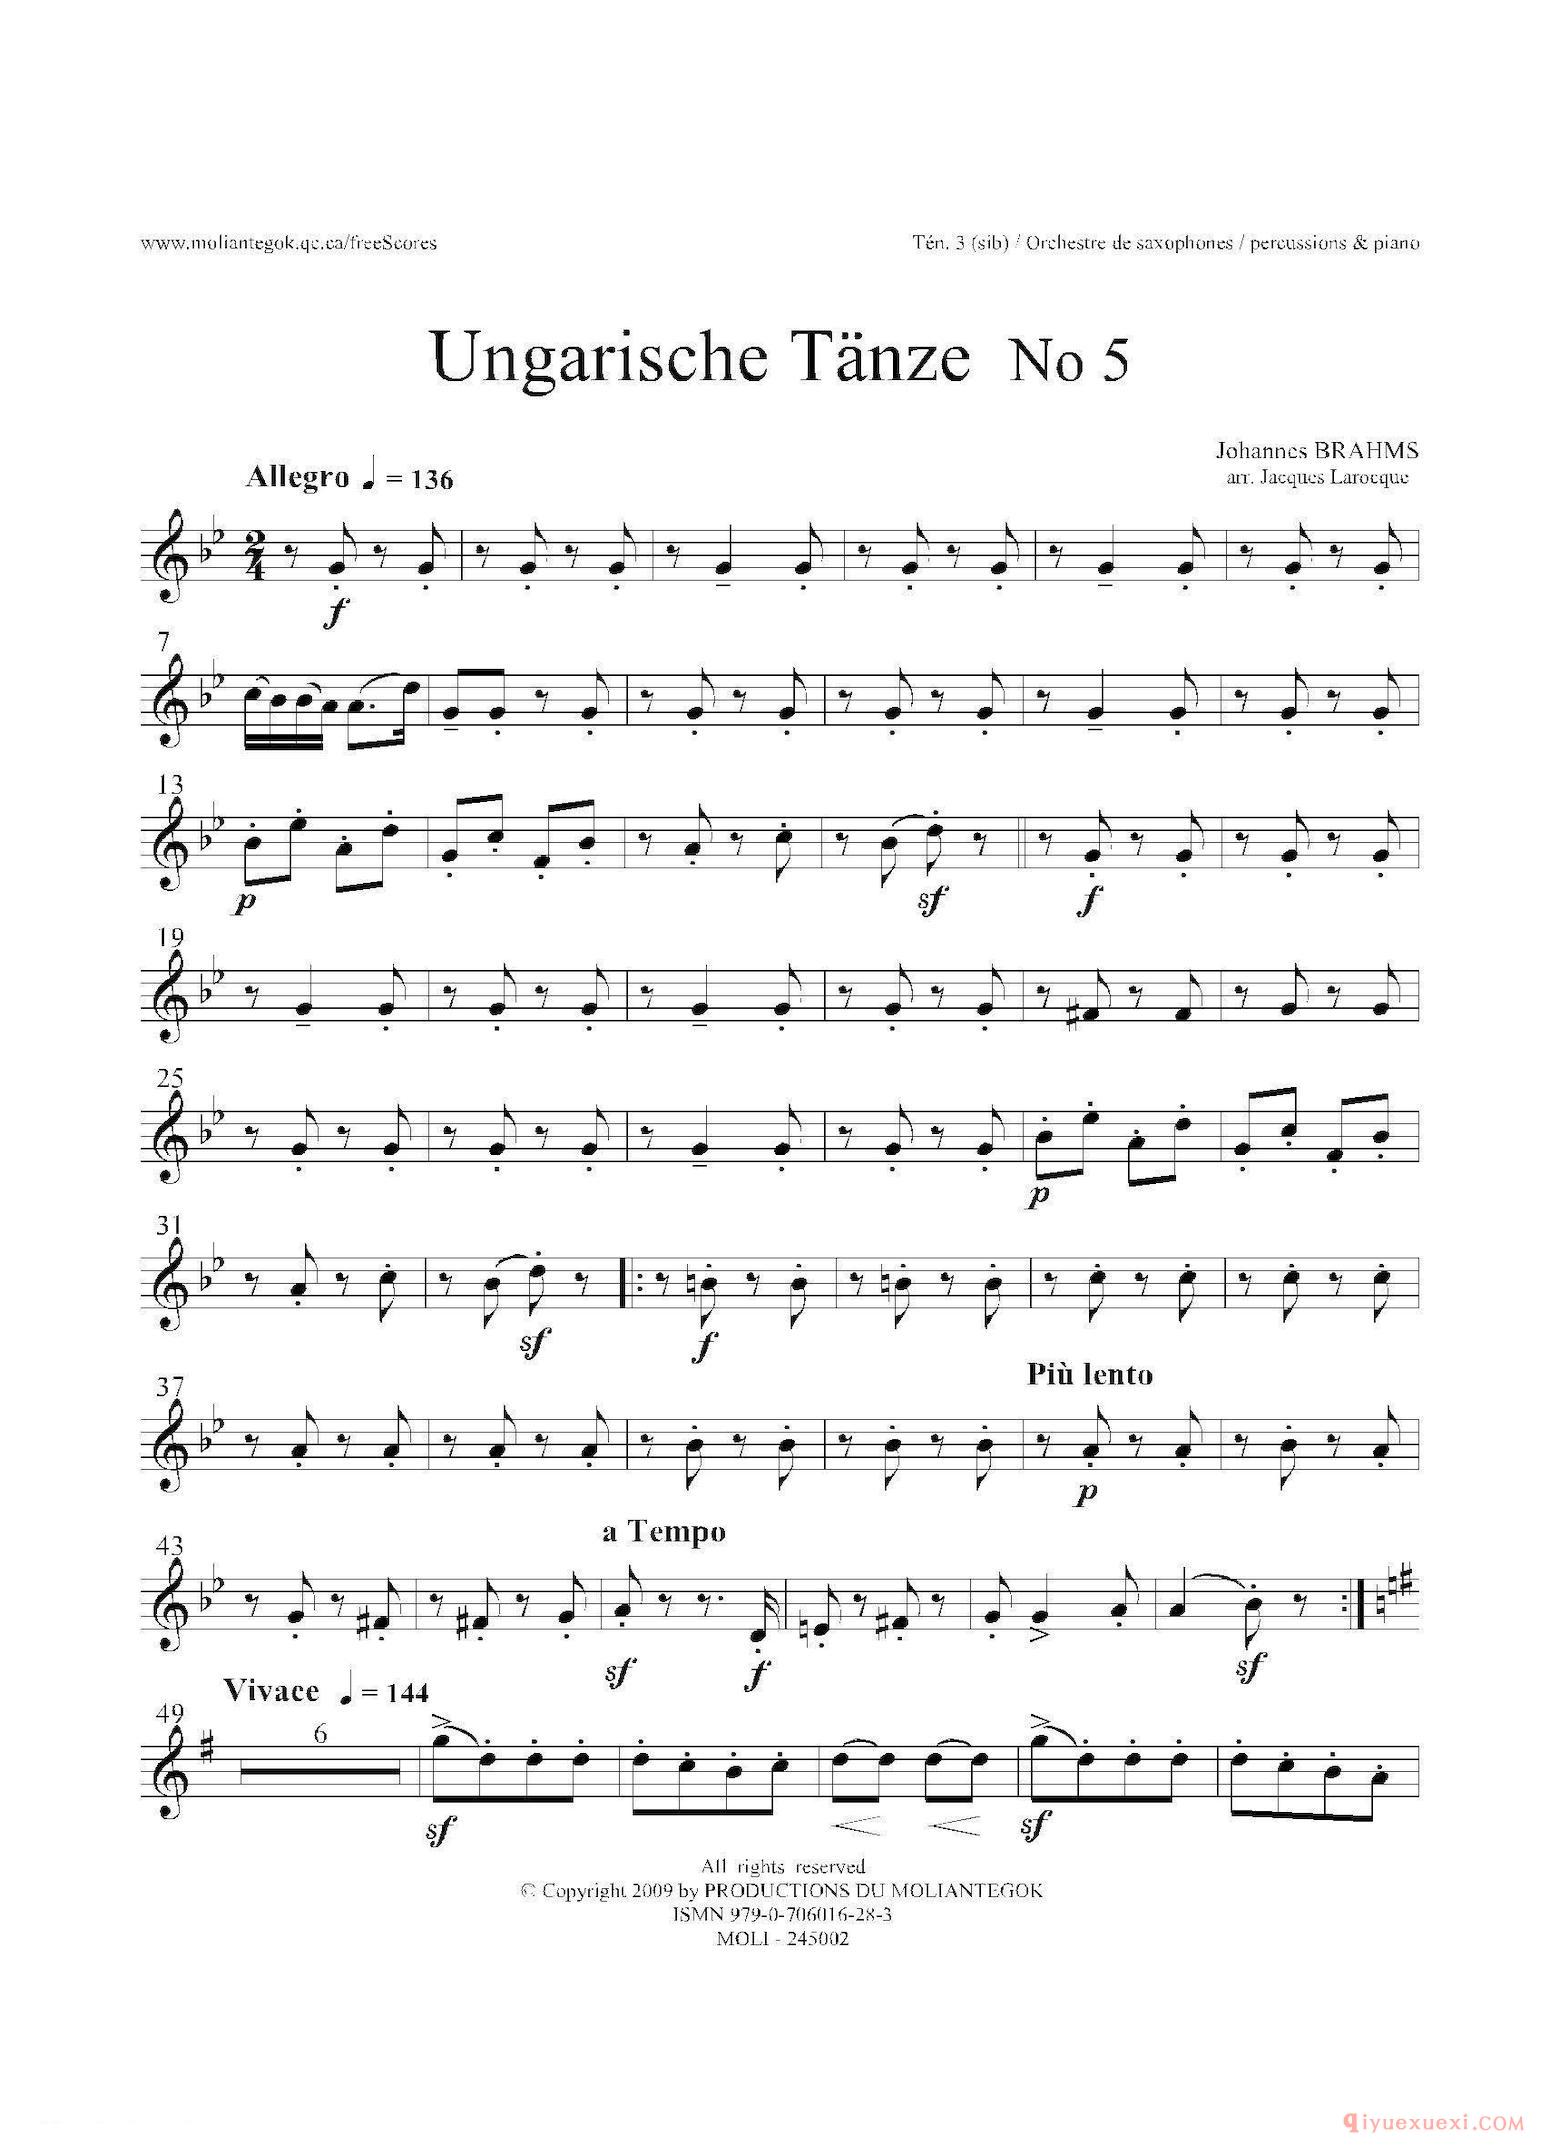 Ungarische Tnze No 5（十五重奏​Ten.1-2-3​分谱）